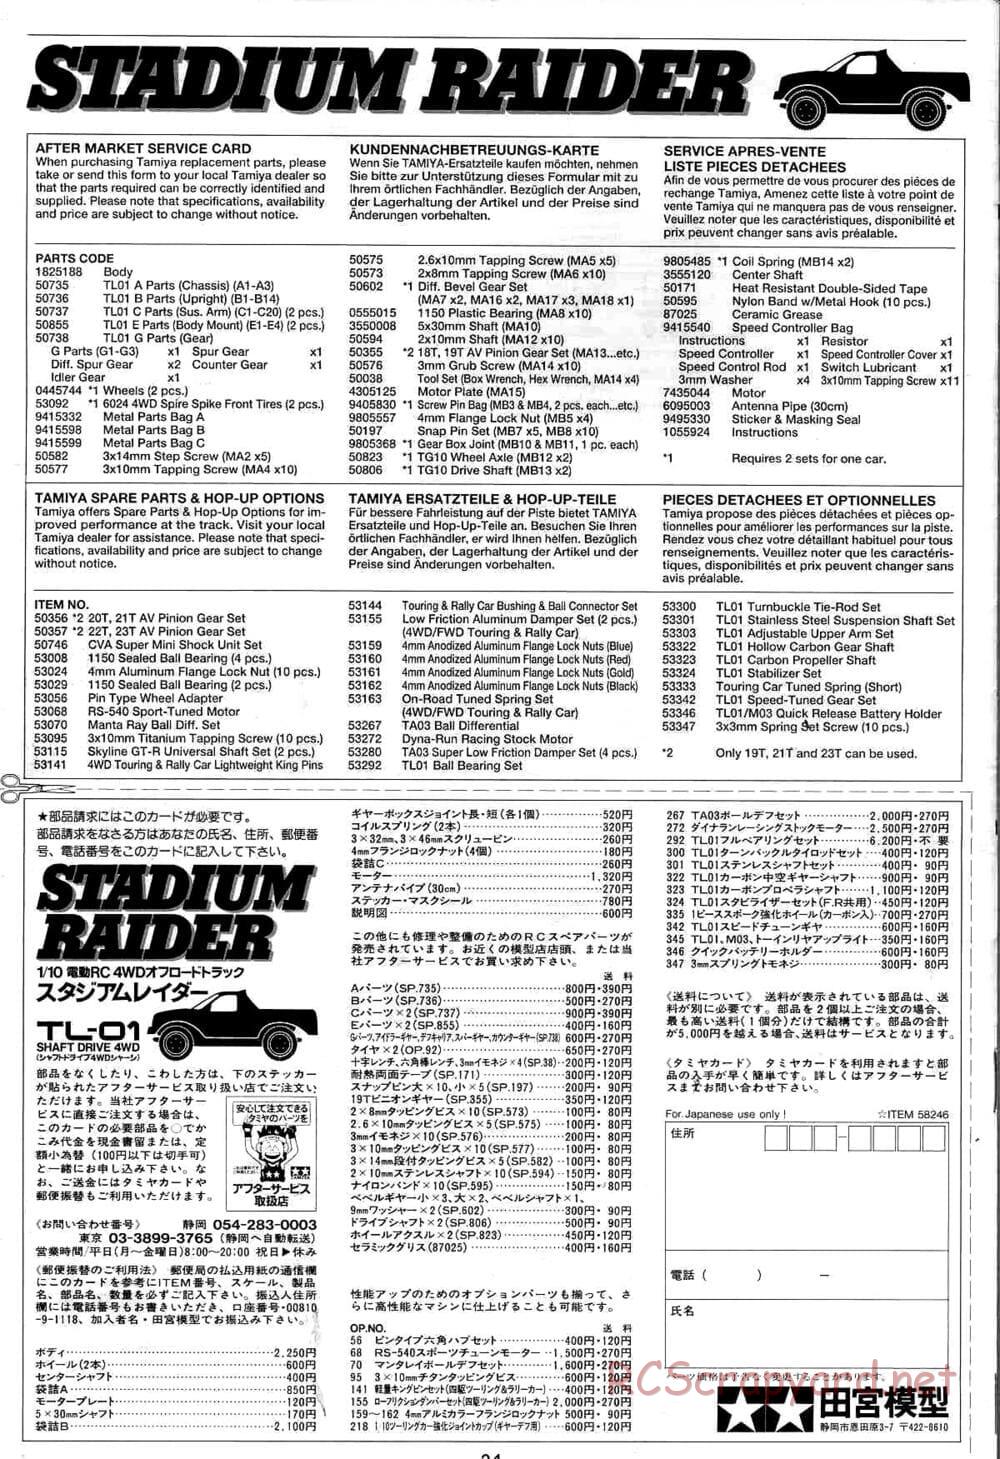 Tamiya - Stadium Raider - TL-01 Chassis - Manual - Page 24